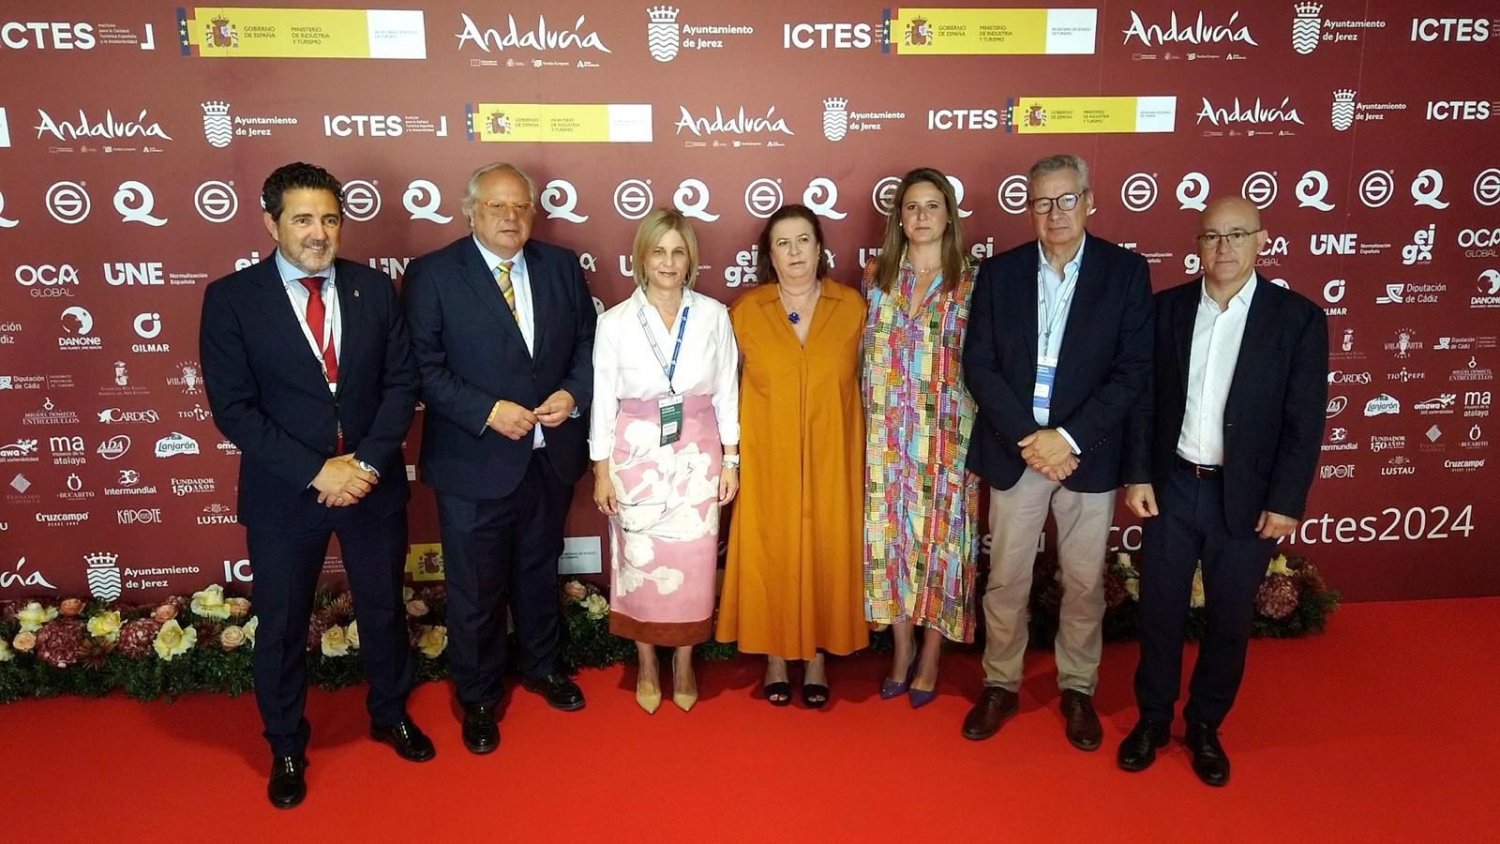 Andalucía planifica una gestión inteligente y sostenible del turismo que beneficie al destino y a la sociedad